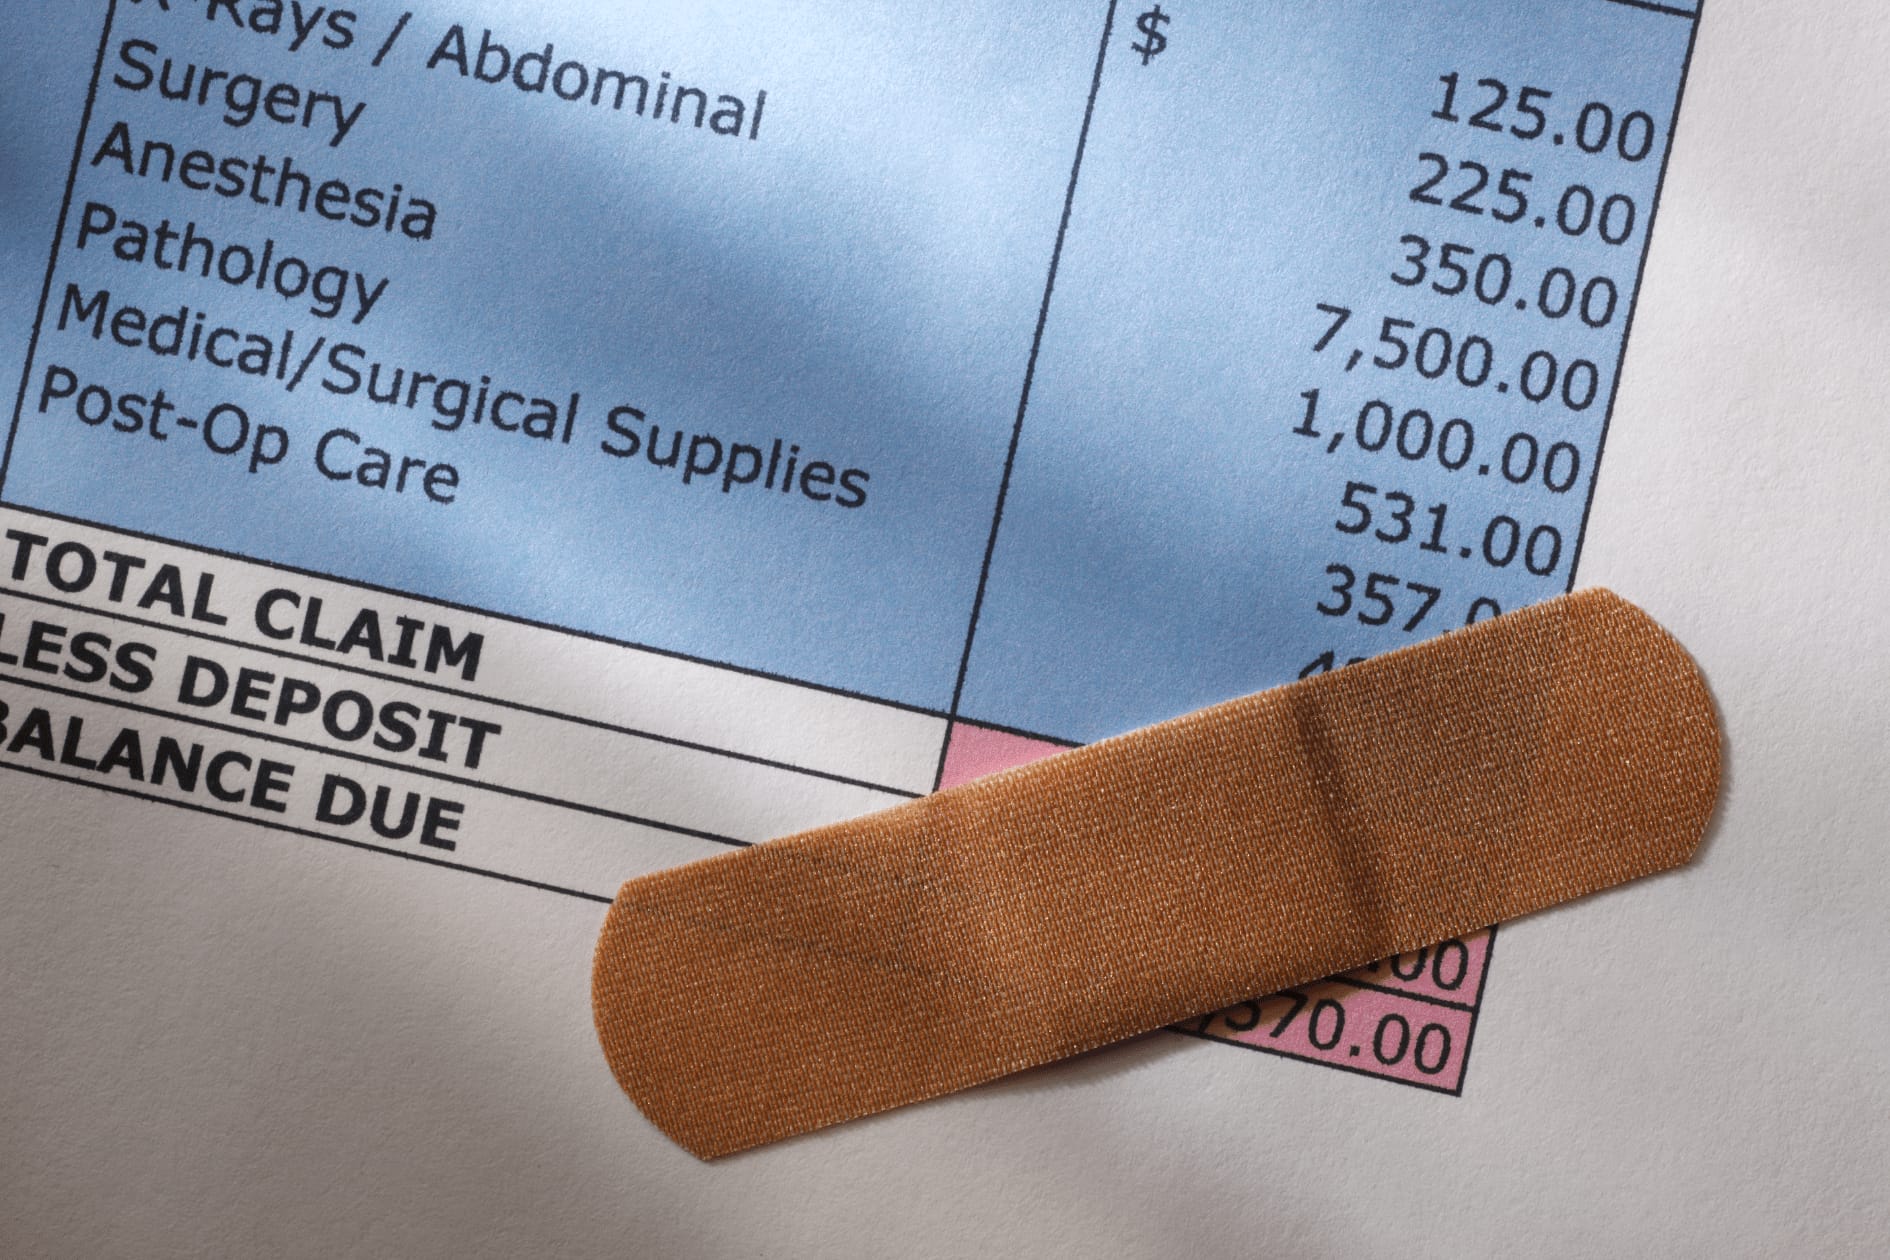 Eliminate Under-$500 Medical Debts on Credit Reports